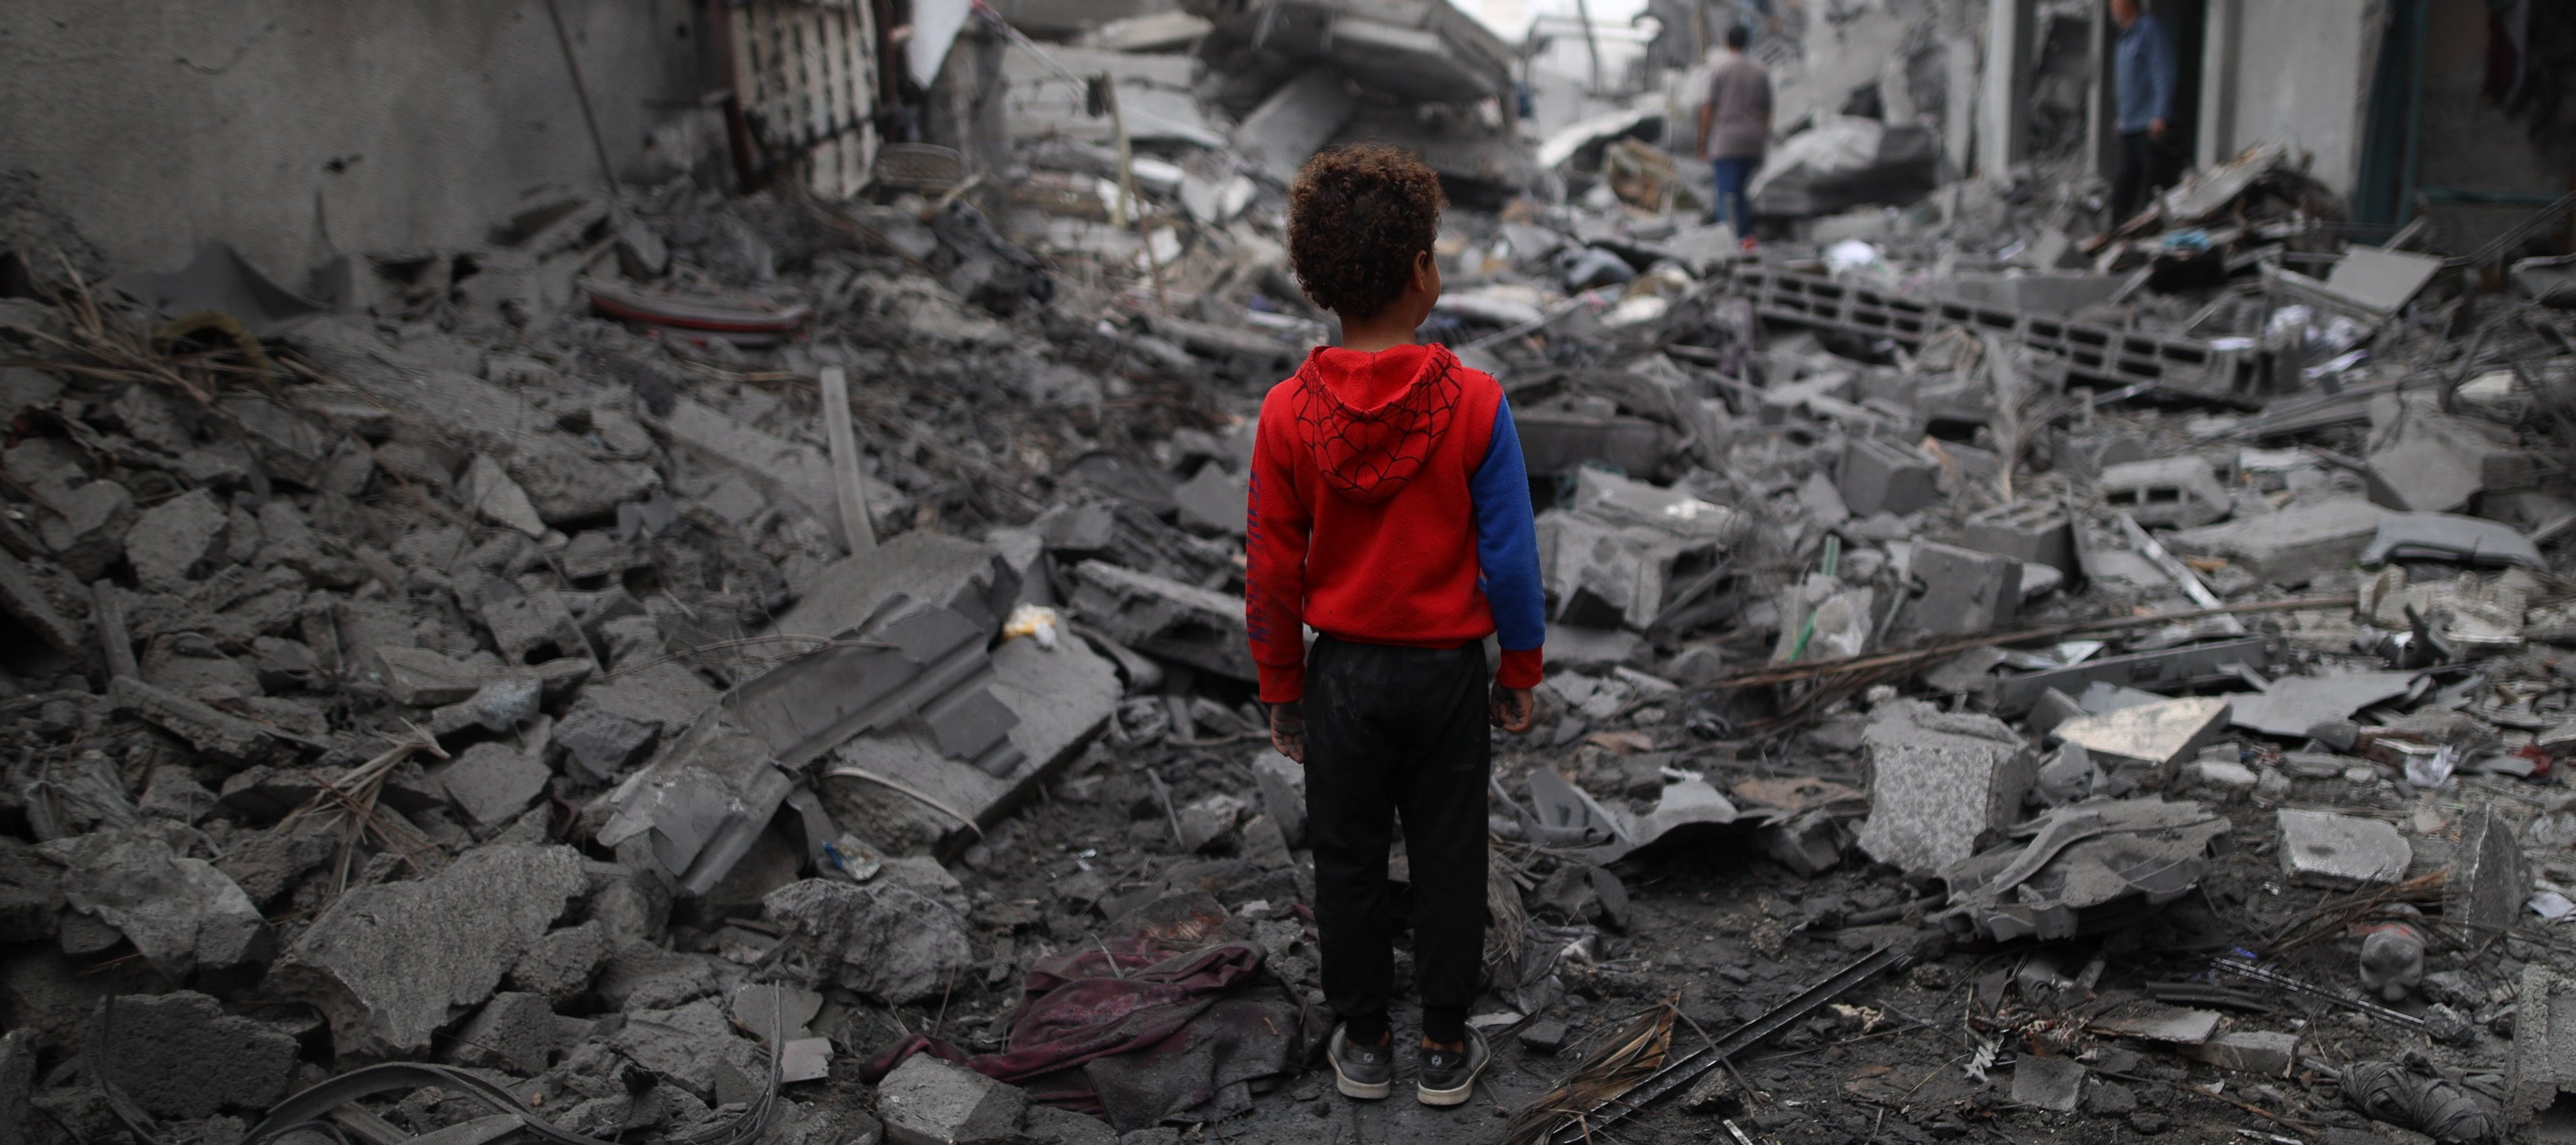 Gaza: Junge vor Trümmern im Flüchtlingslager Maghazi